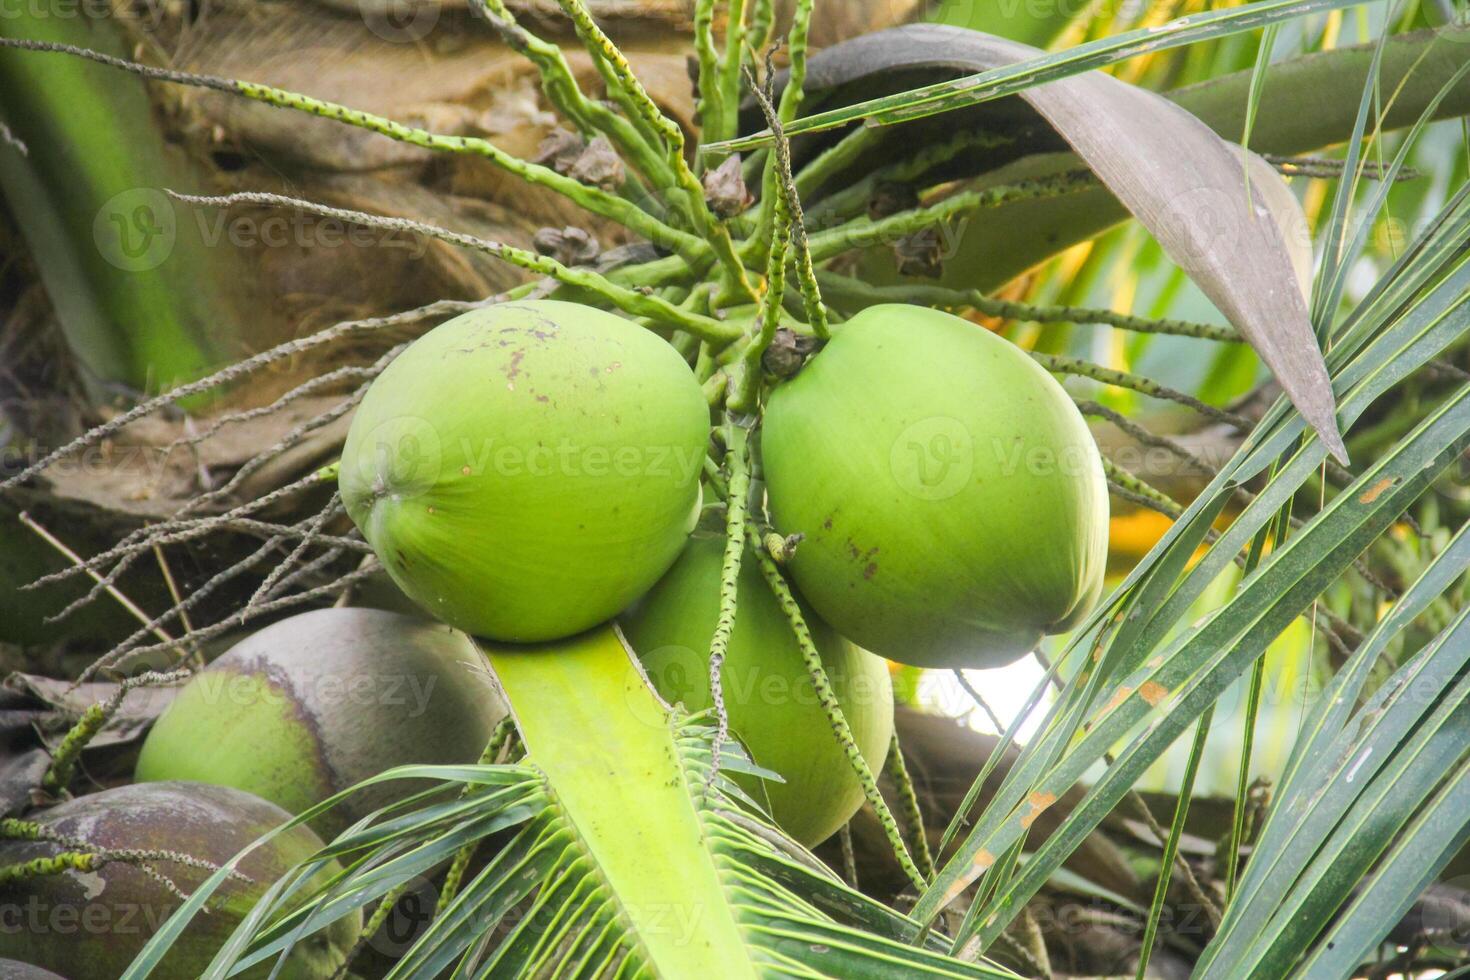 jovem verde cocos ainda em seus fertil árvores foto